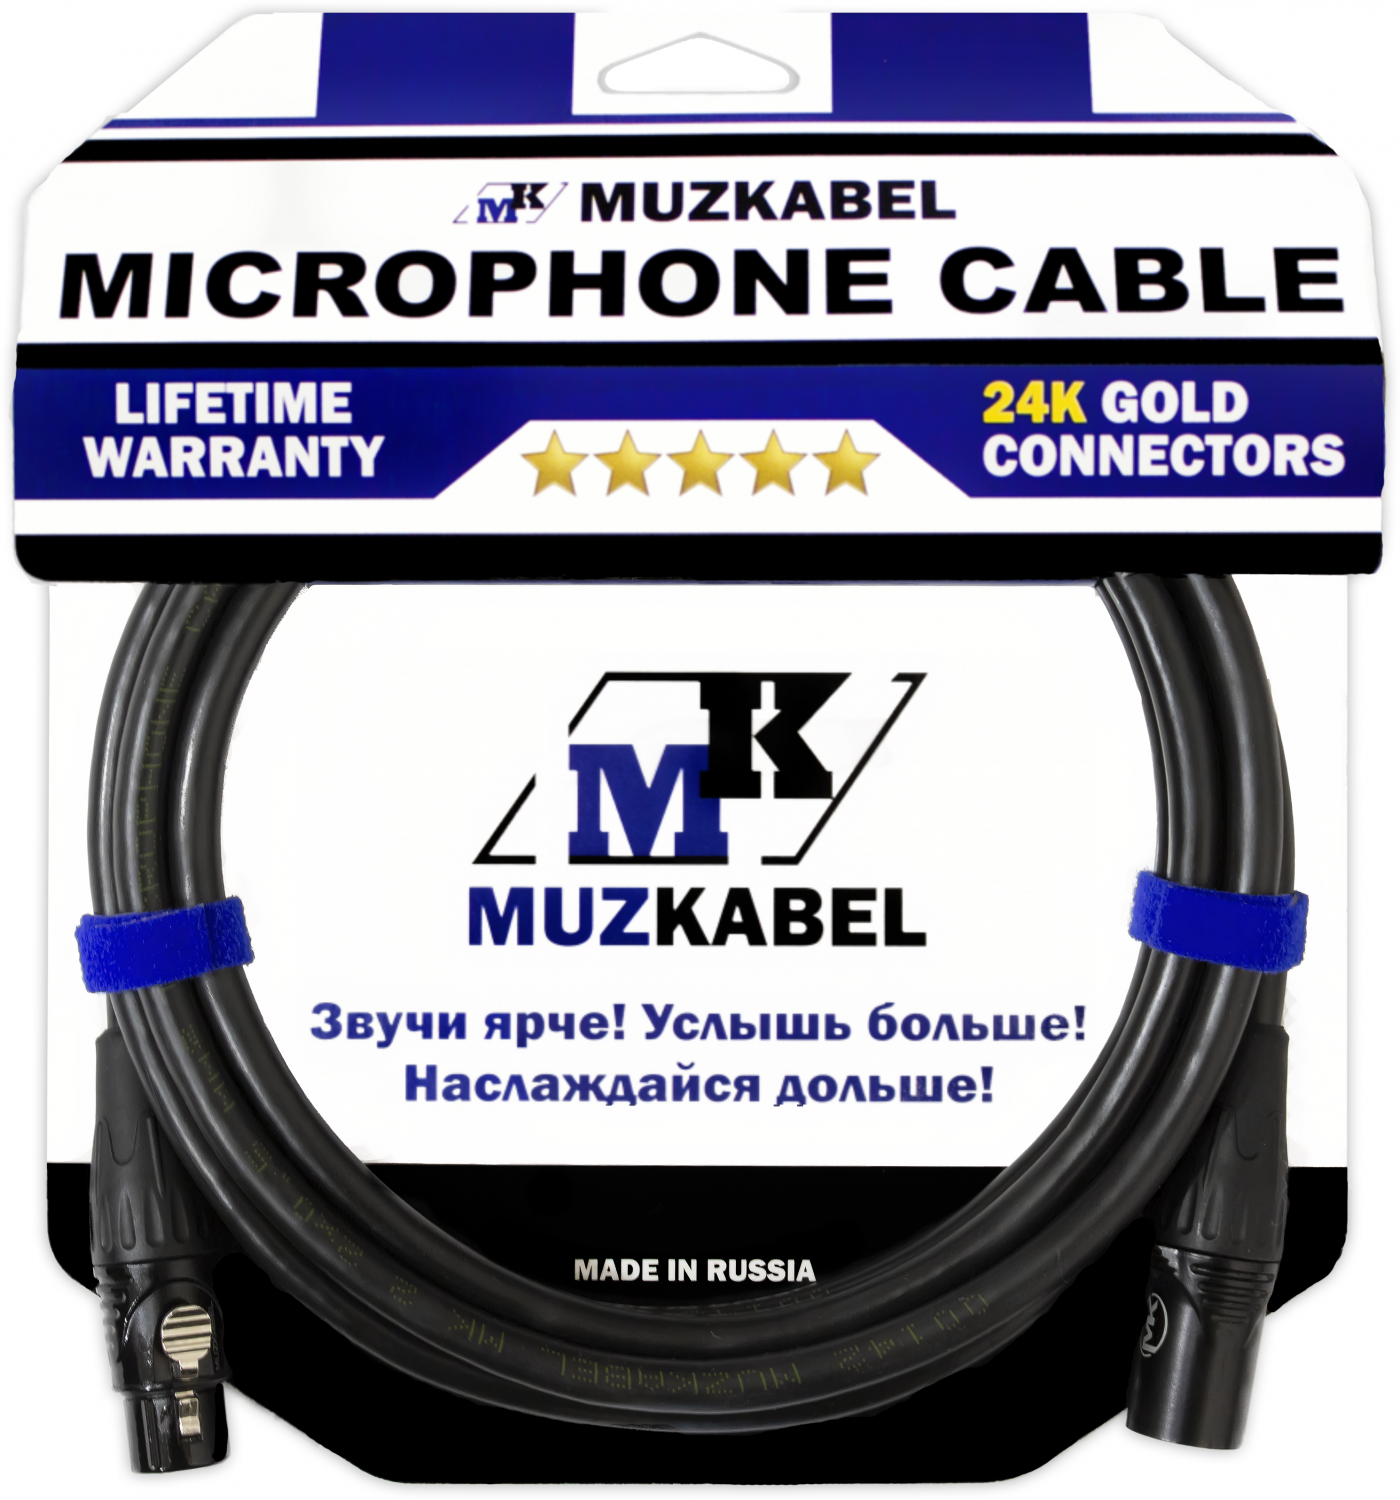 Микрофонный кабель MUZKABEL MBXMK2 - 15 метров, XLR - XLR